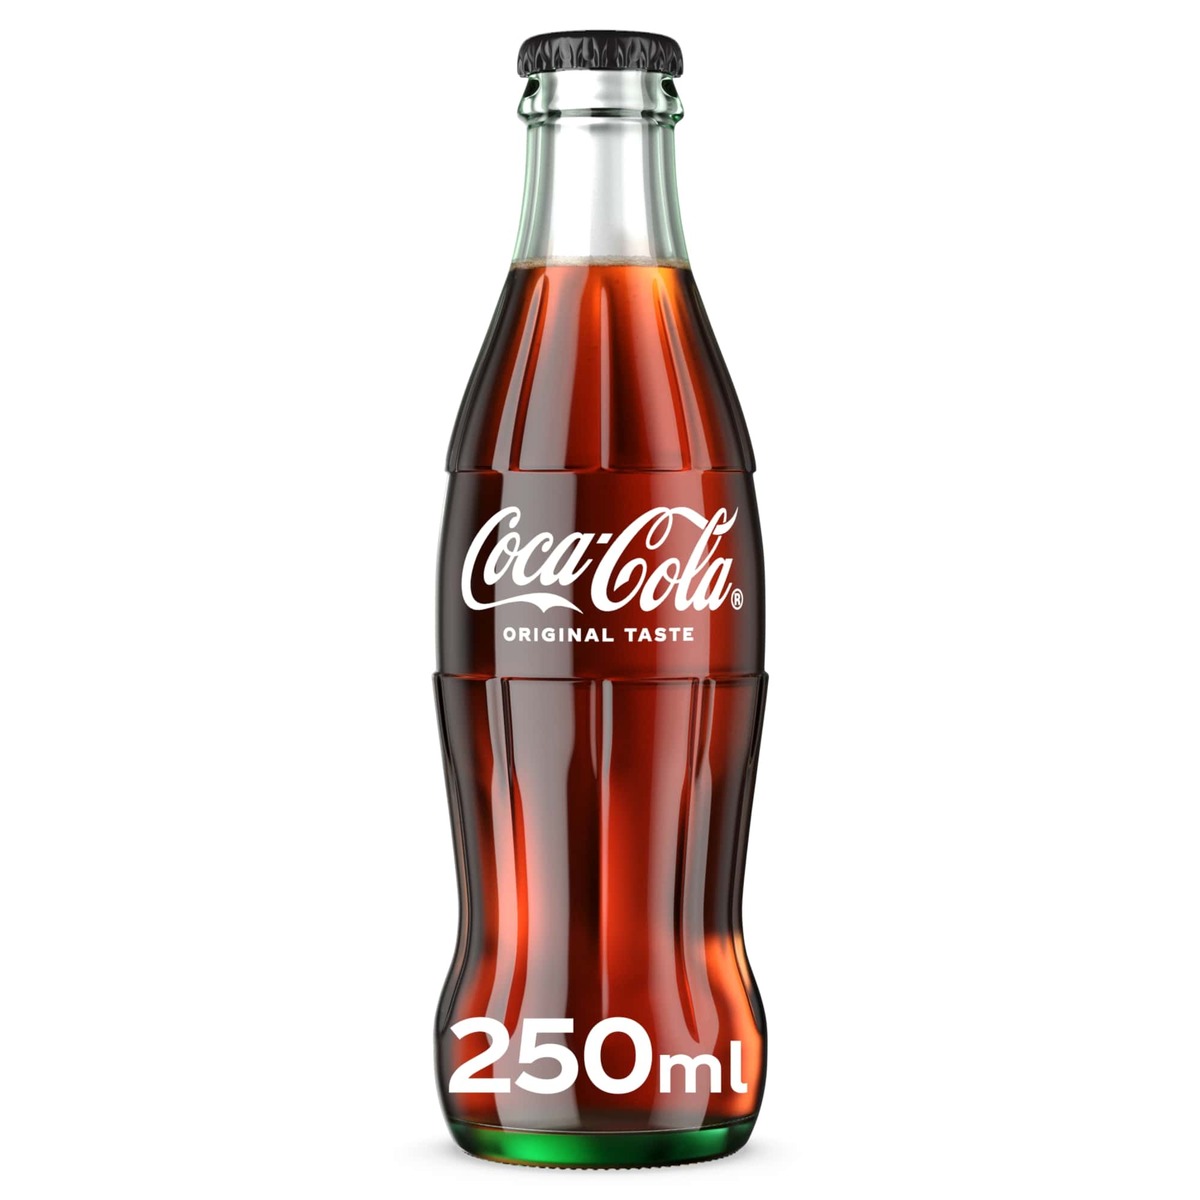 كوكاكولا زجاجة 250 مل × 6 قطع